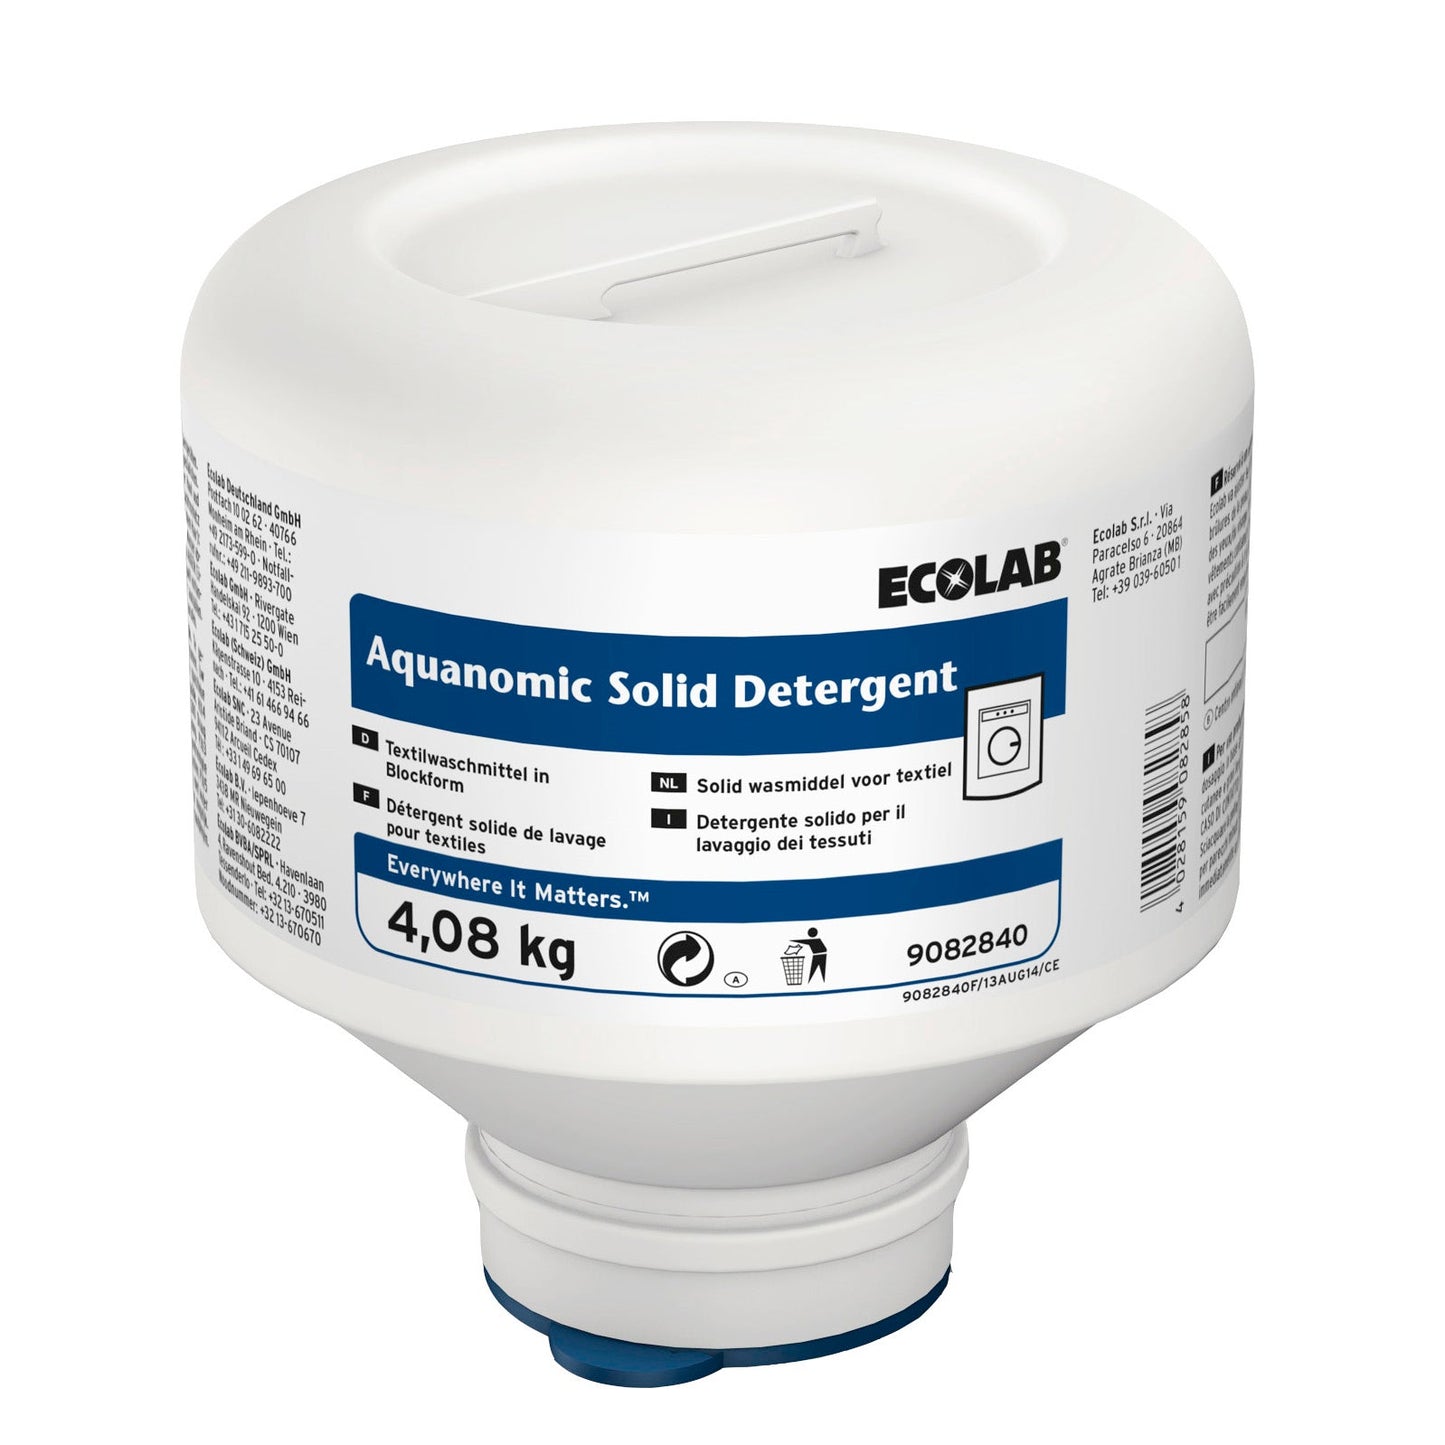 ECOLAB Aquanomic Solid Detergent, 4x4,08 kg